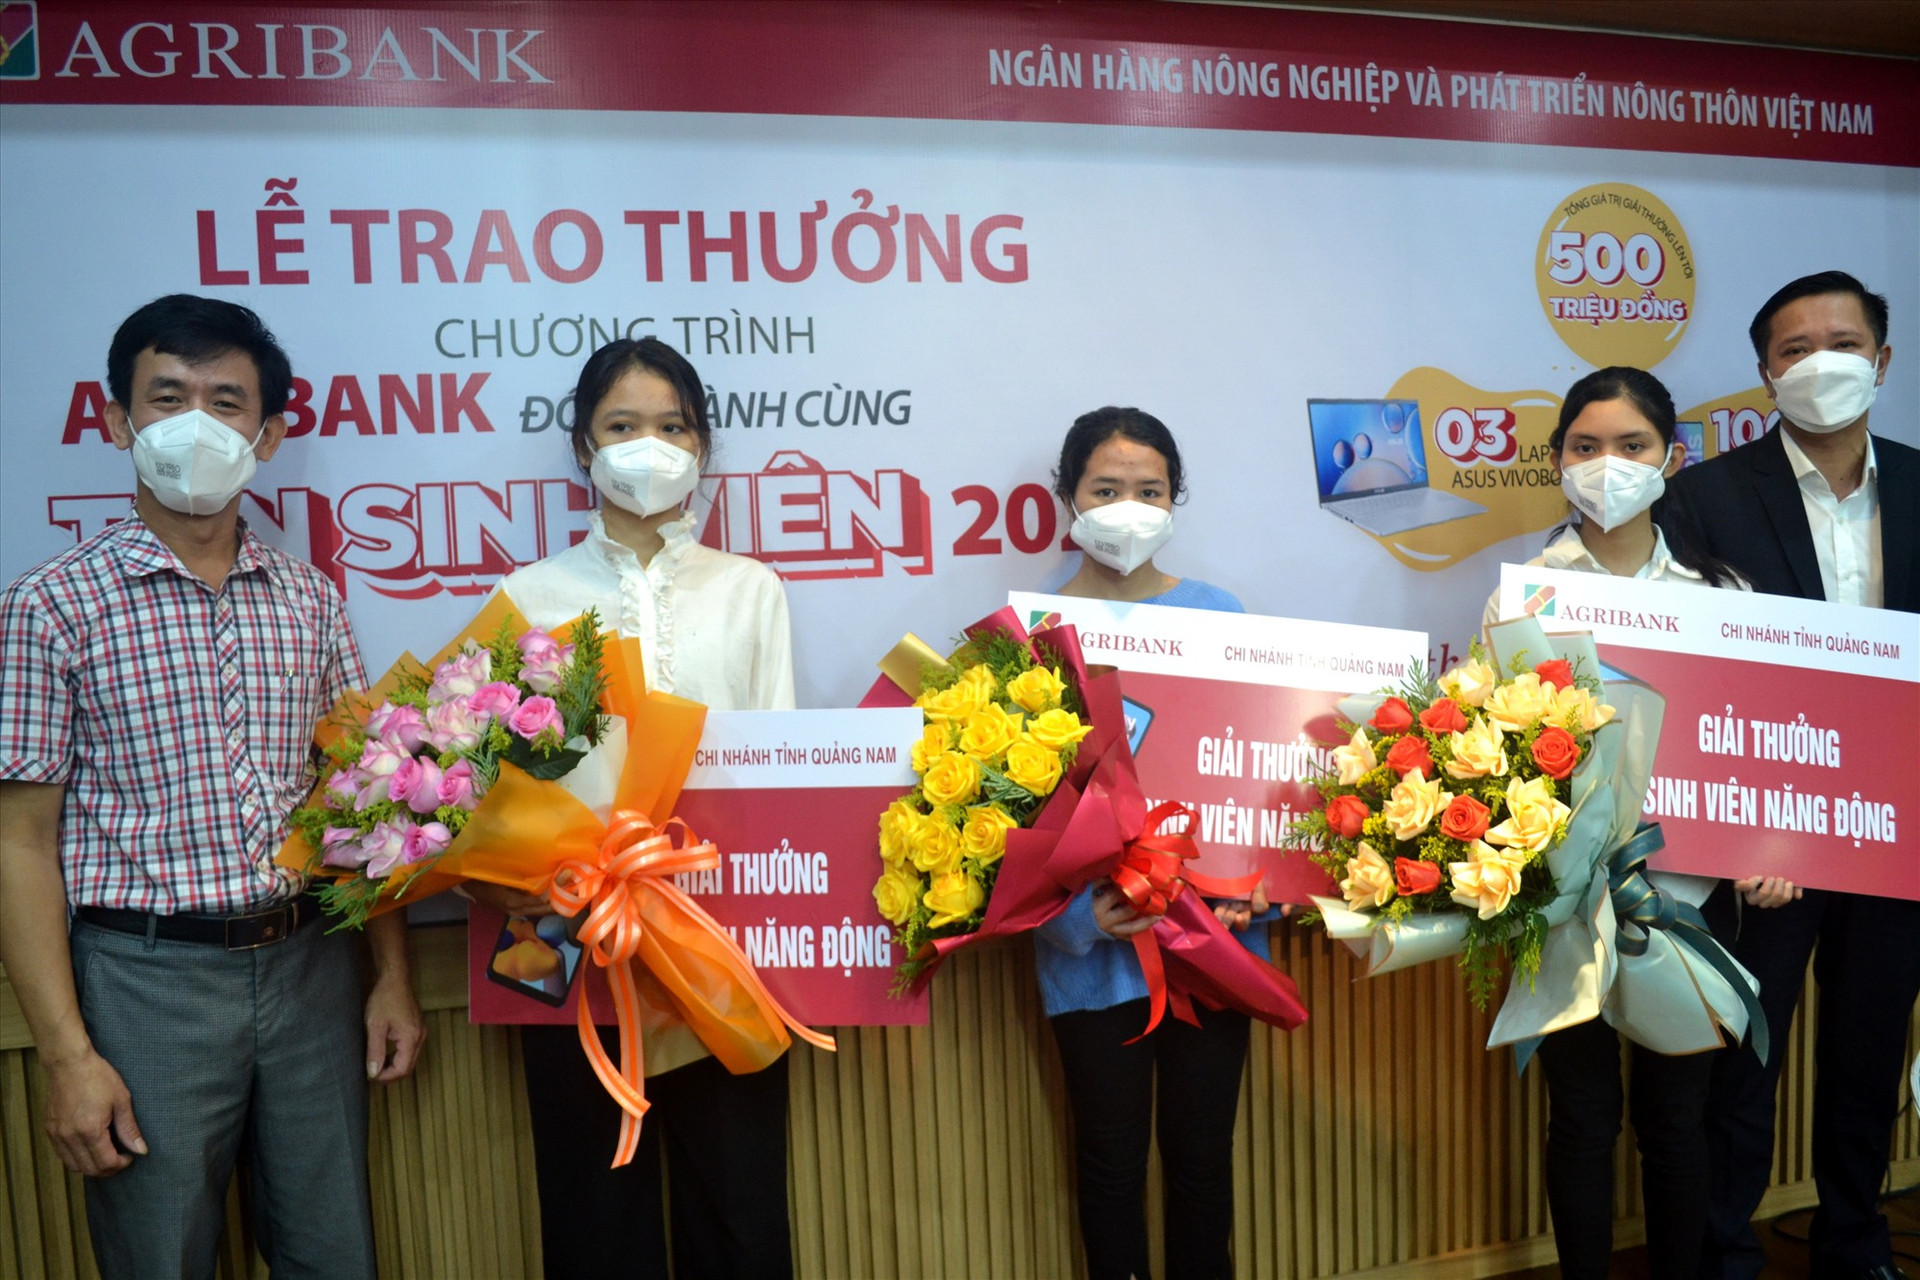 Agribank Quảng Nam trao thưởng cho 3 tân sinh viên của Đại học Quảng Nam đã may mắn trúng giải thưởng “Sinh viên năng động”. Ảnh: Q.VIỆT